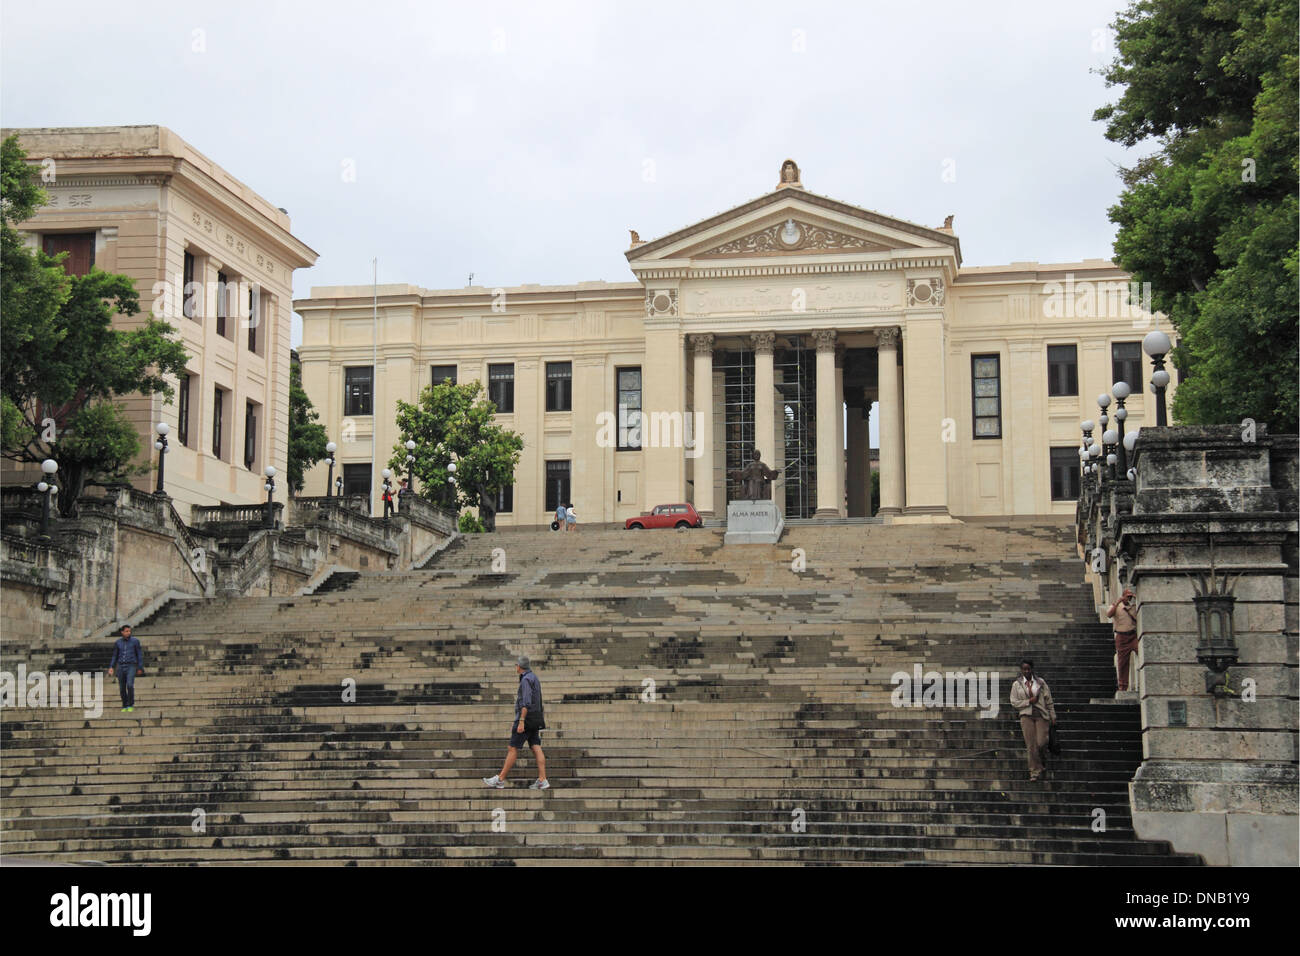 Universidad de La Habana, San Lázaro, Vedado, Havana, Cuba, Caribbean Sea, Central America Stock Photo